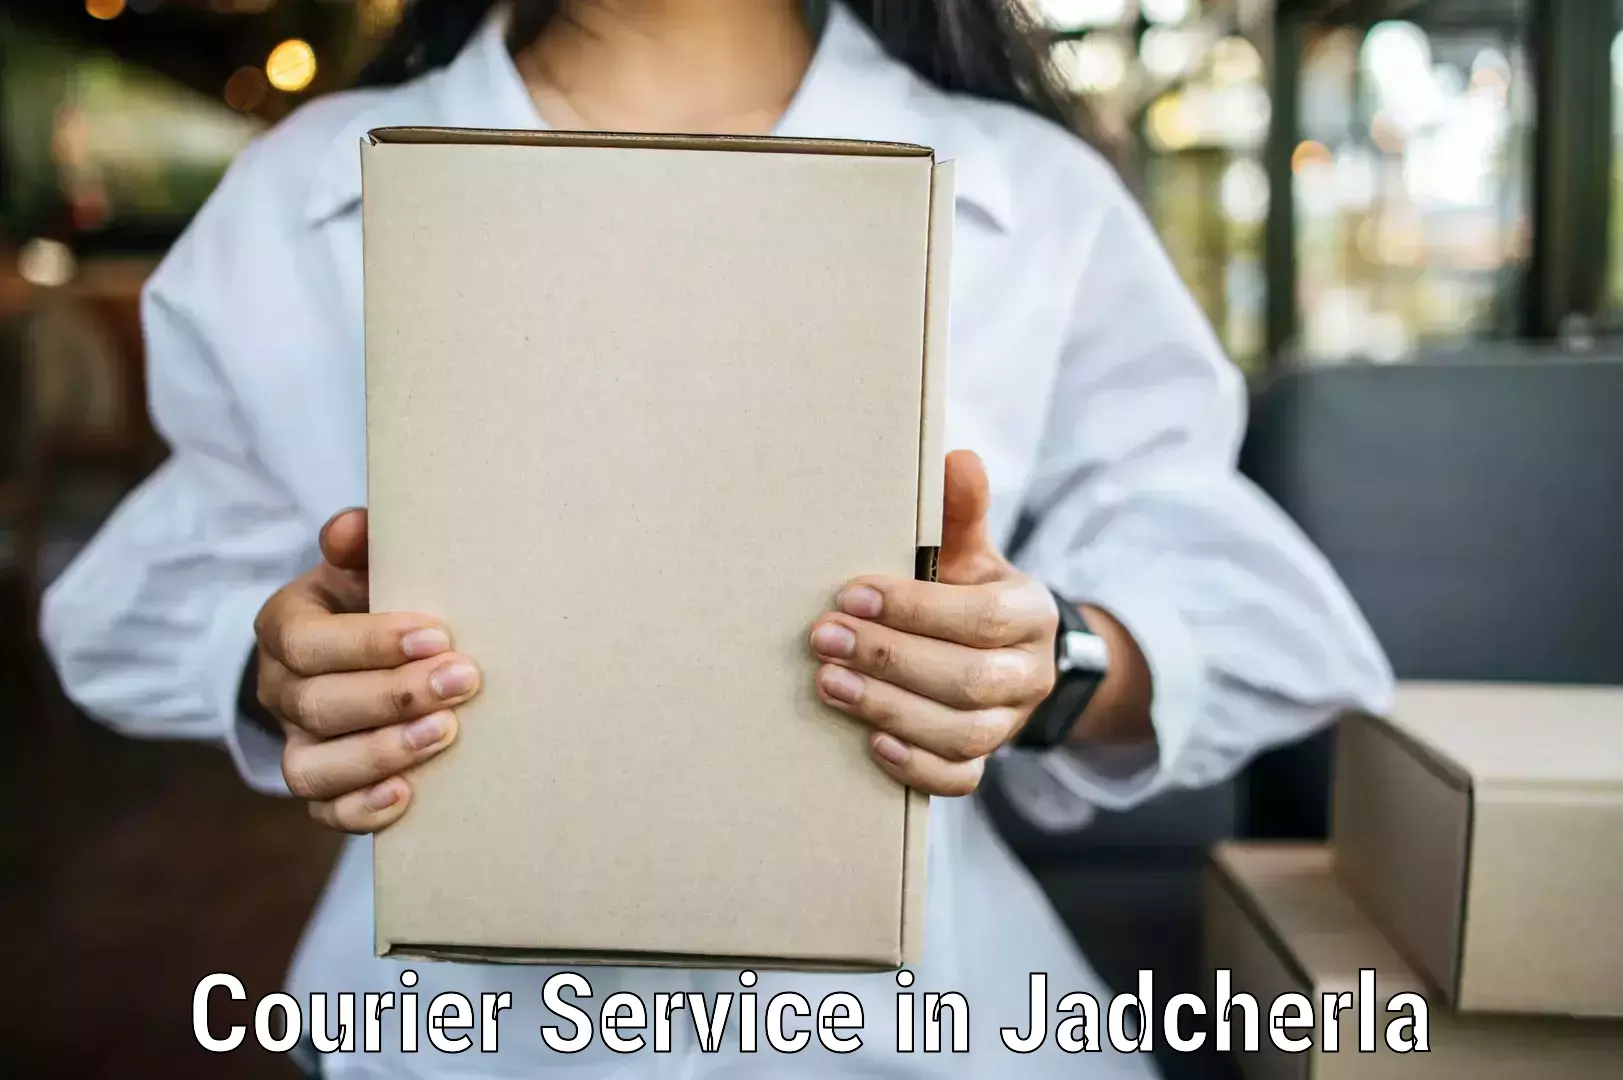 Express delivery capabilities in Jadcherla